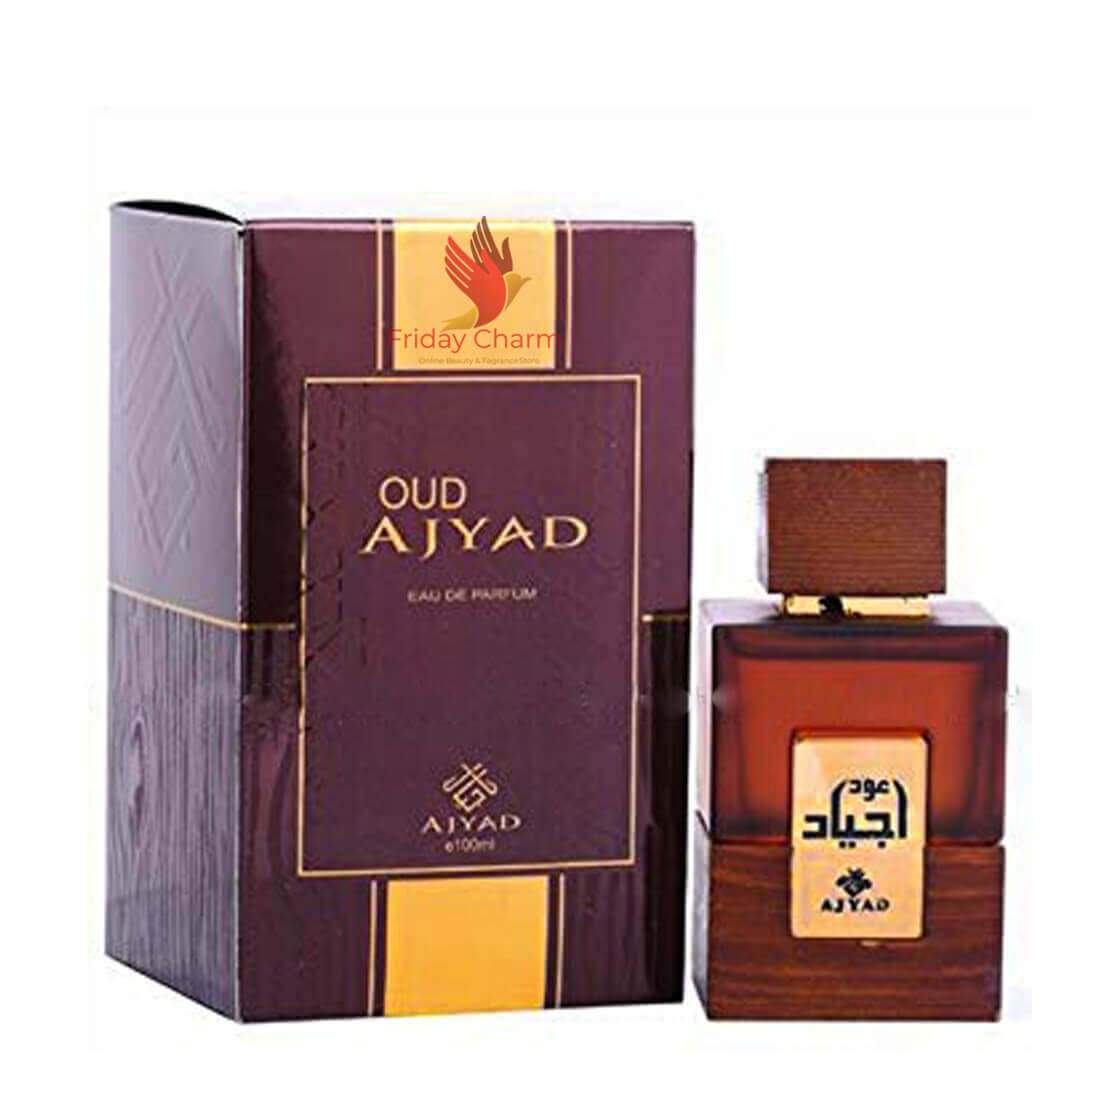 Oud Ajyad spray